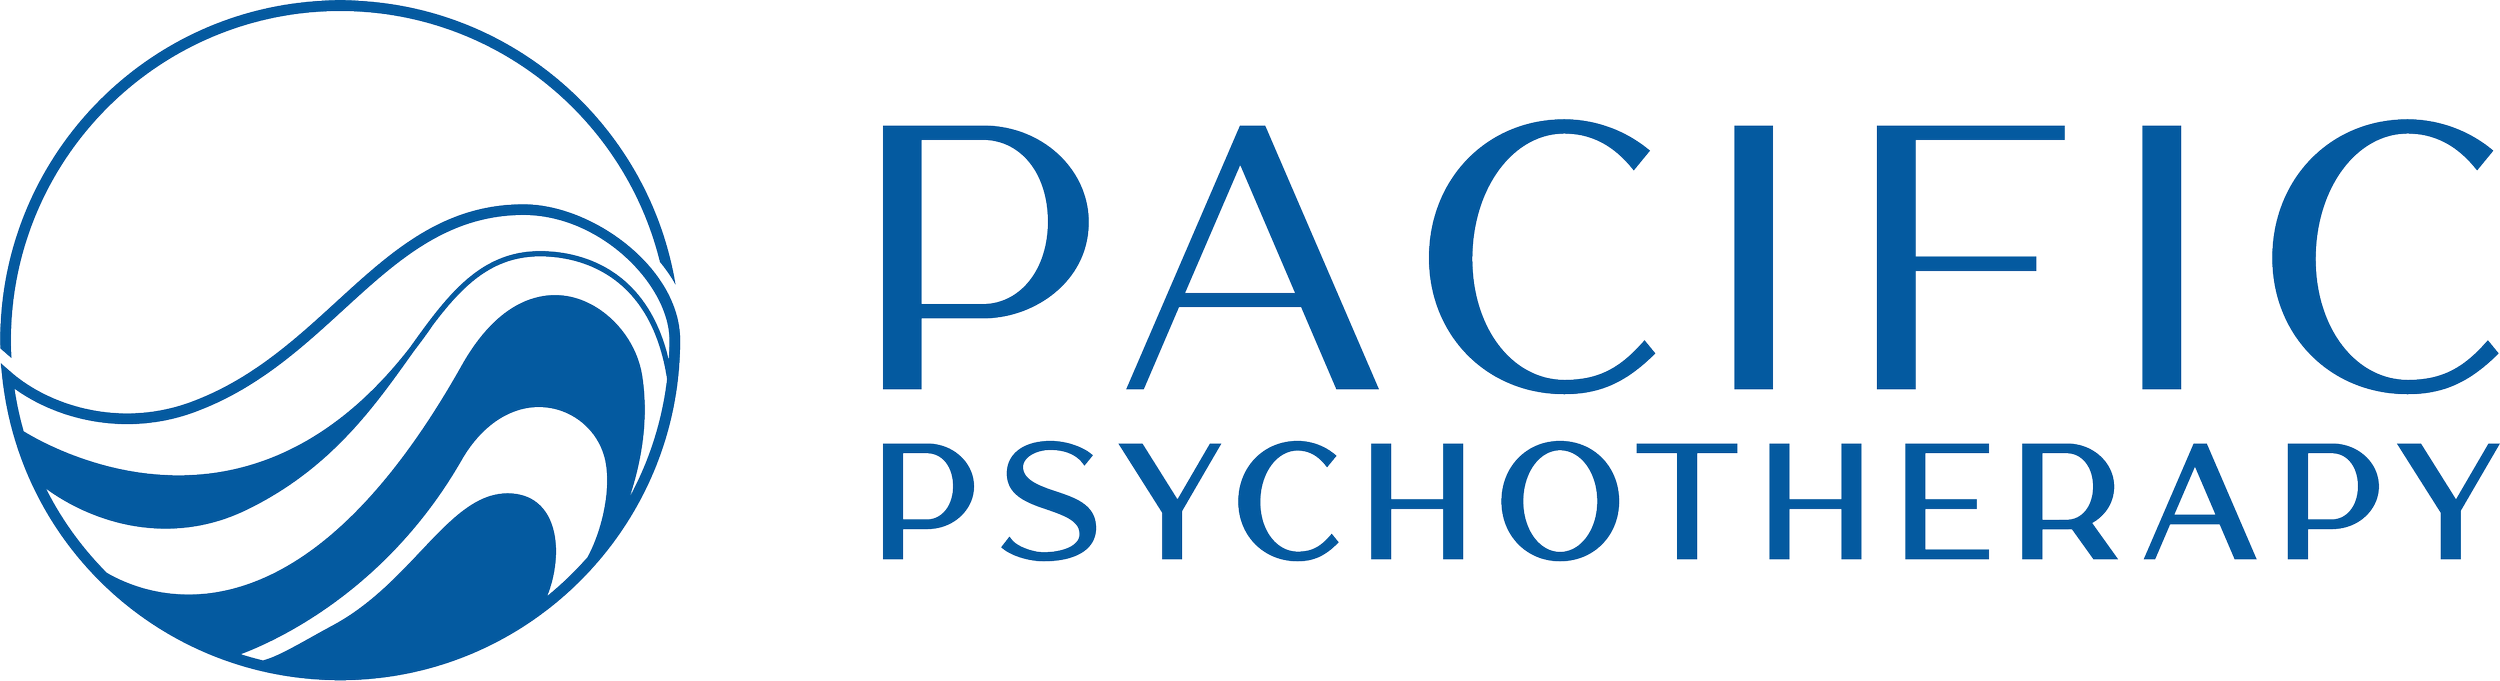 Pacific Psychotherapy - Psychotherapy in Santa Cruz and Los Gatos